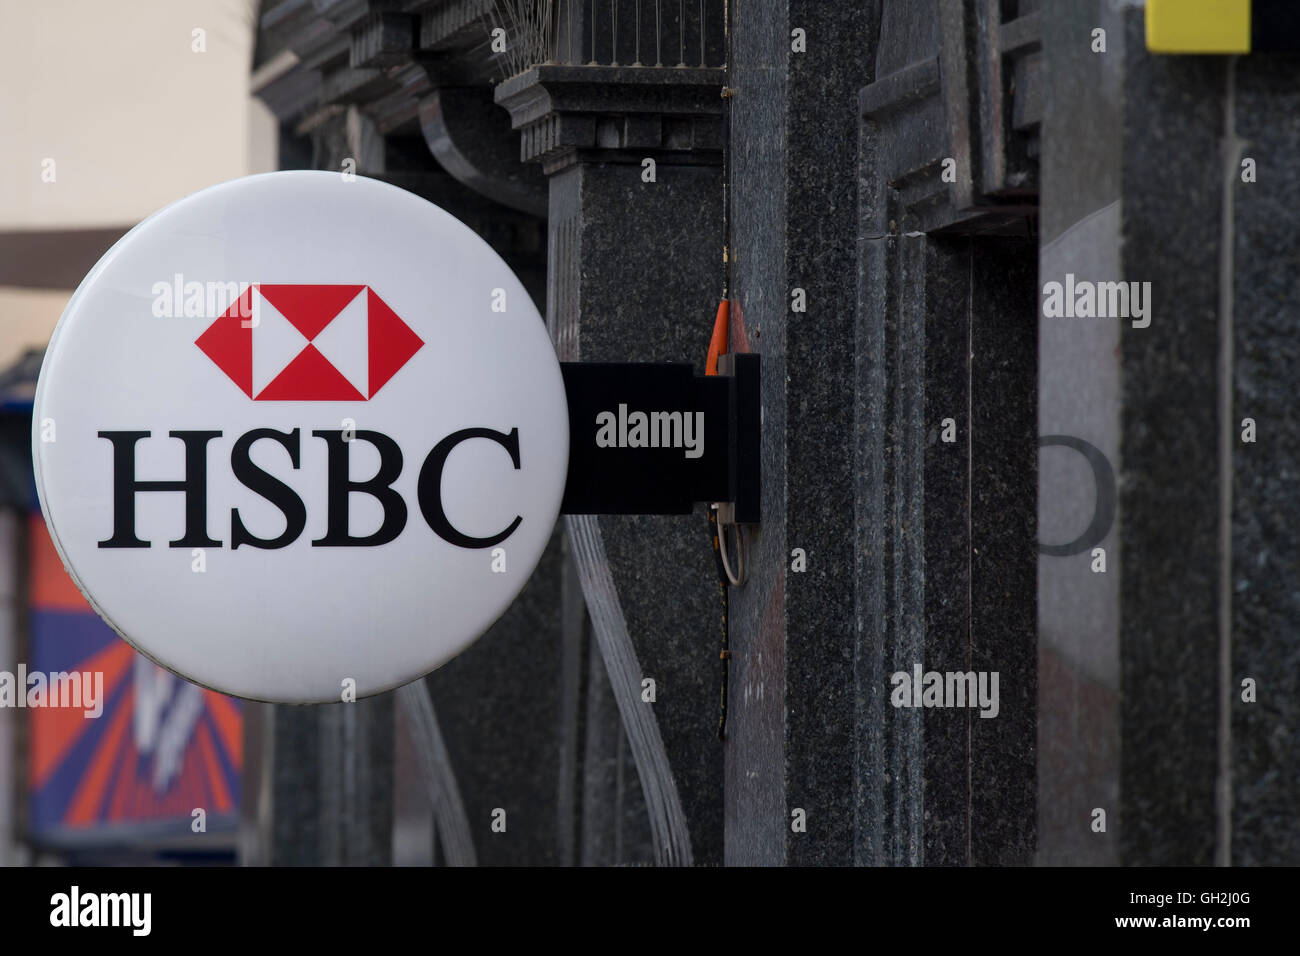 El banco HSBC firmar logo. Foto de stock